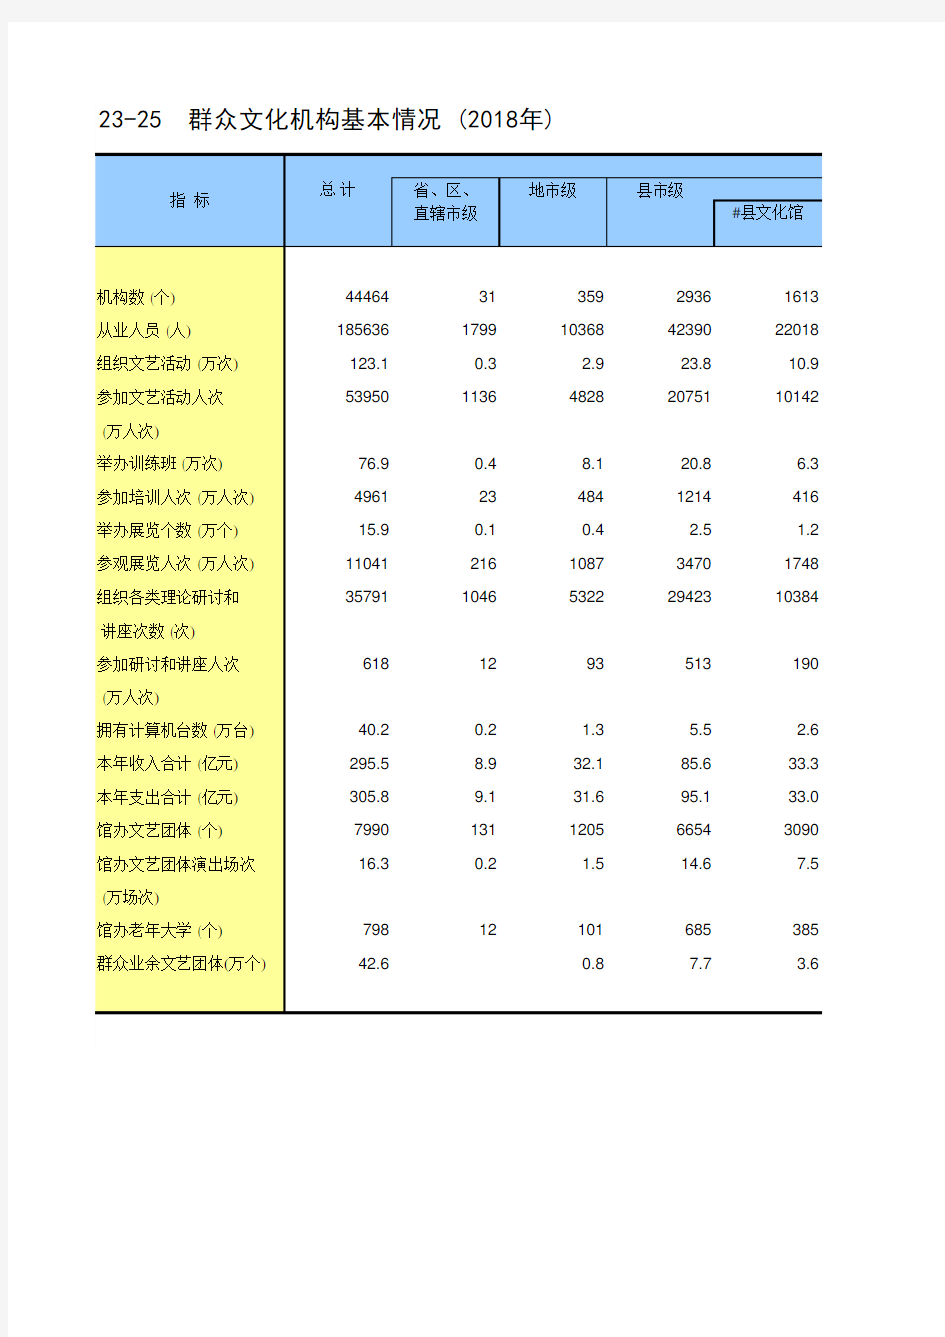 中国统计年鉴2019全国各省市区社会经济发展指标：群众文化机构基本情况(2018年)